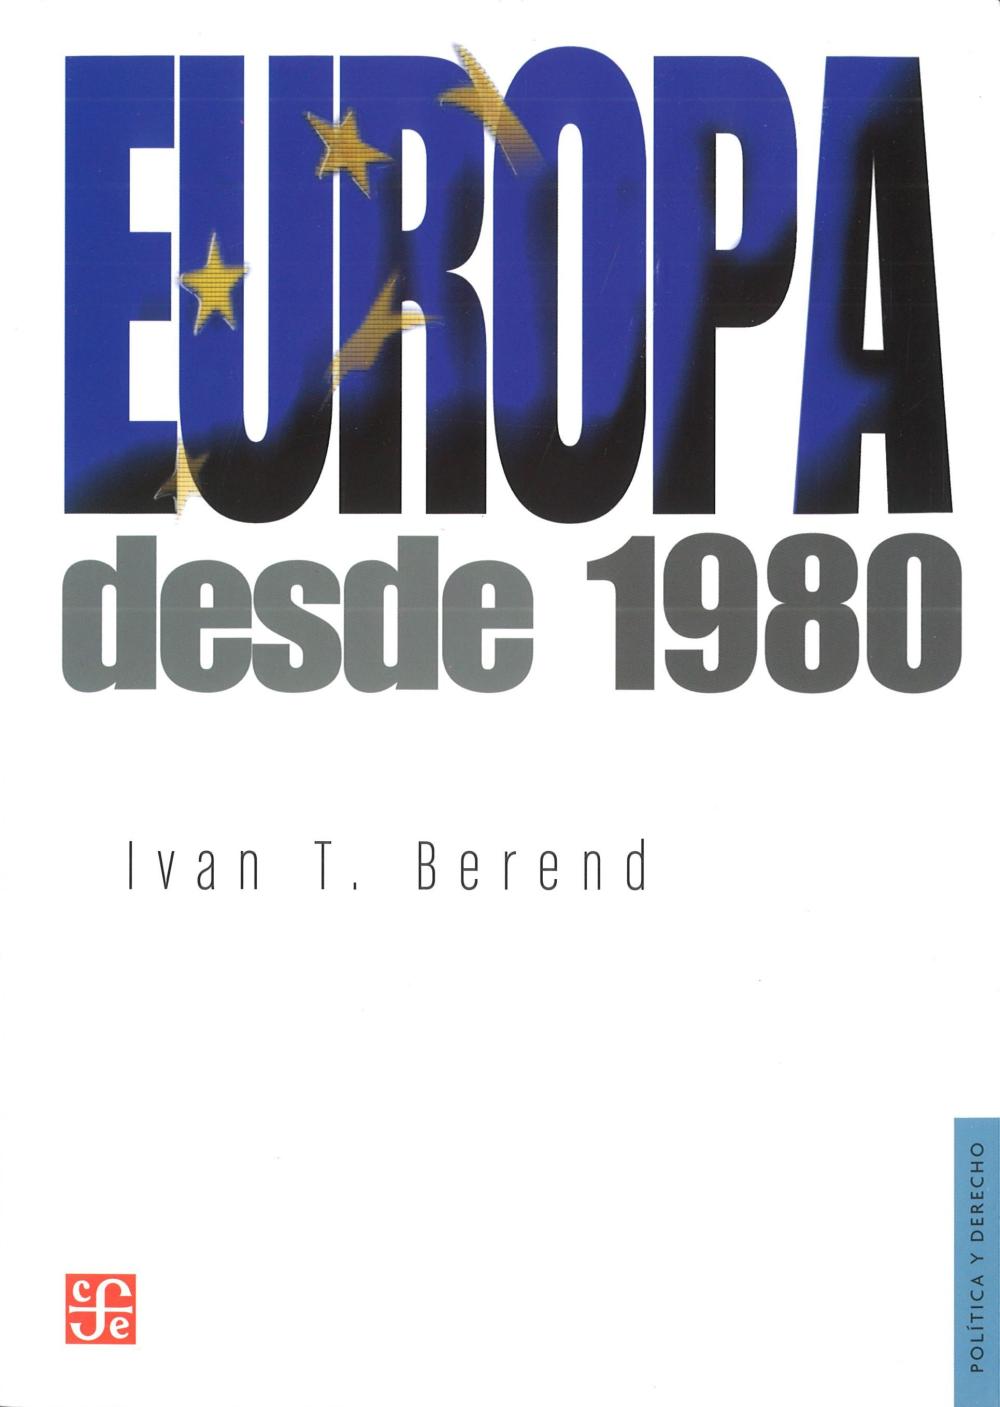 EUROPA DESDE 1980